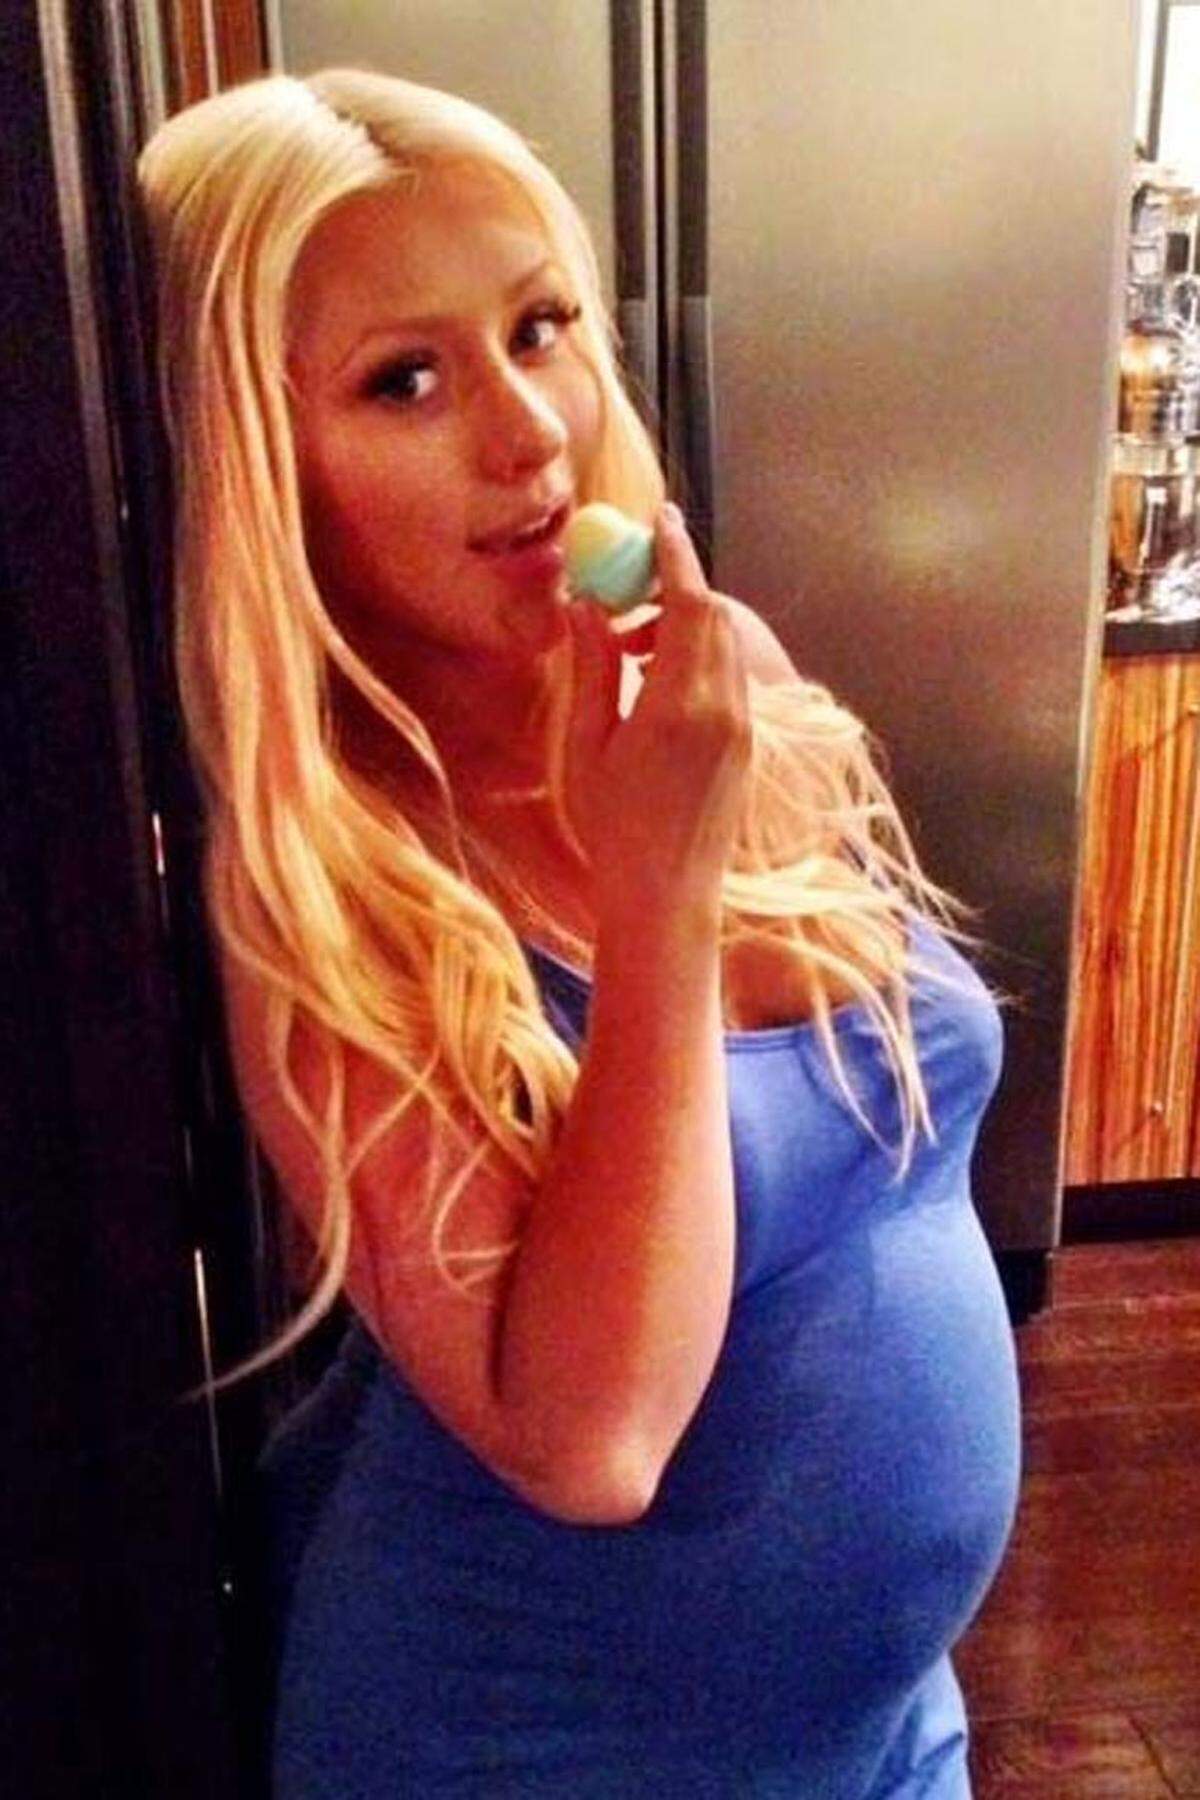 Über Twitter ließ sich auch die Schwangerschaft von Christina Aguilera beobachten. Die Aufmerksamkeit rund um ihr Ungeborenes ließ sich von der Sängerin gut umsetzen. Die Botschaft unter dem Bild lautet nämlich nicht "Hey, ich bin schwanger", sondern: "Einen fröhlichen ersten Sommertag wünsche ich! Hält eure Lippen feucht!". Dahinter steht wohl der Kosmetikhersteller EOS, dessen Produkte immer wieder in Musikvideos oder auf Instagram-Bildern von Stars auftauchen. Das Baby kam im August 2014 zur Welt.